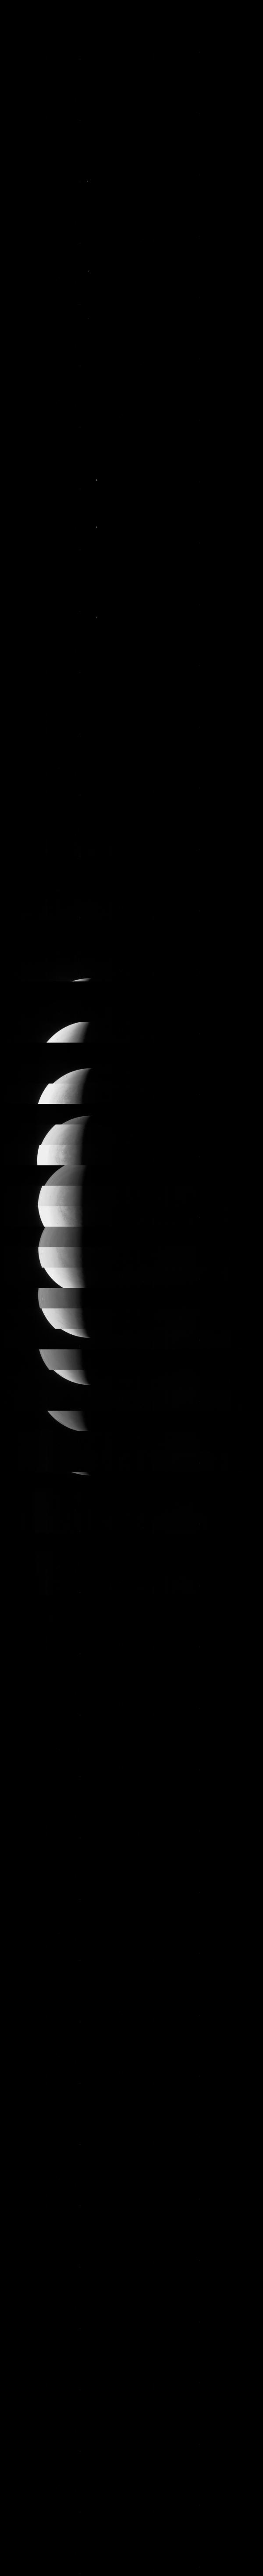 JunoCam: Sự hoành tráng của sứ mệnh Juno đang chờ đón bạn khám phá với JunoCam! Đừng bỏ lỡ cơ hội được ngắm nhìn các hình ảnh đáng kinh ngạc của sao Mộc từ góc nhìn độc đáo của JunoCam.